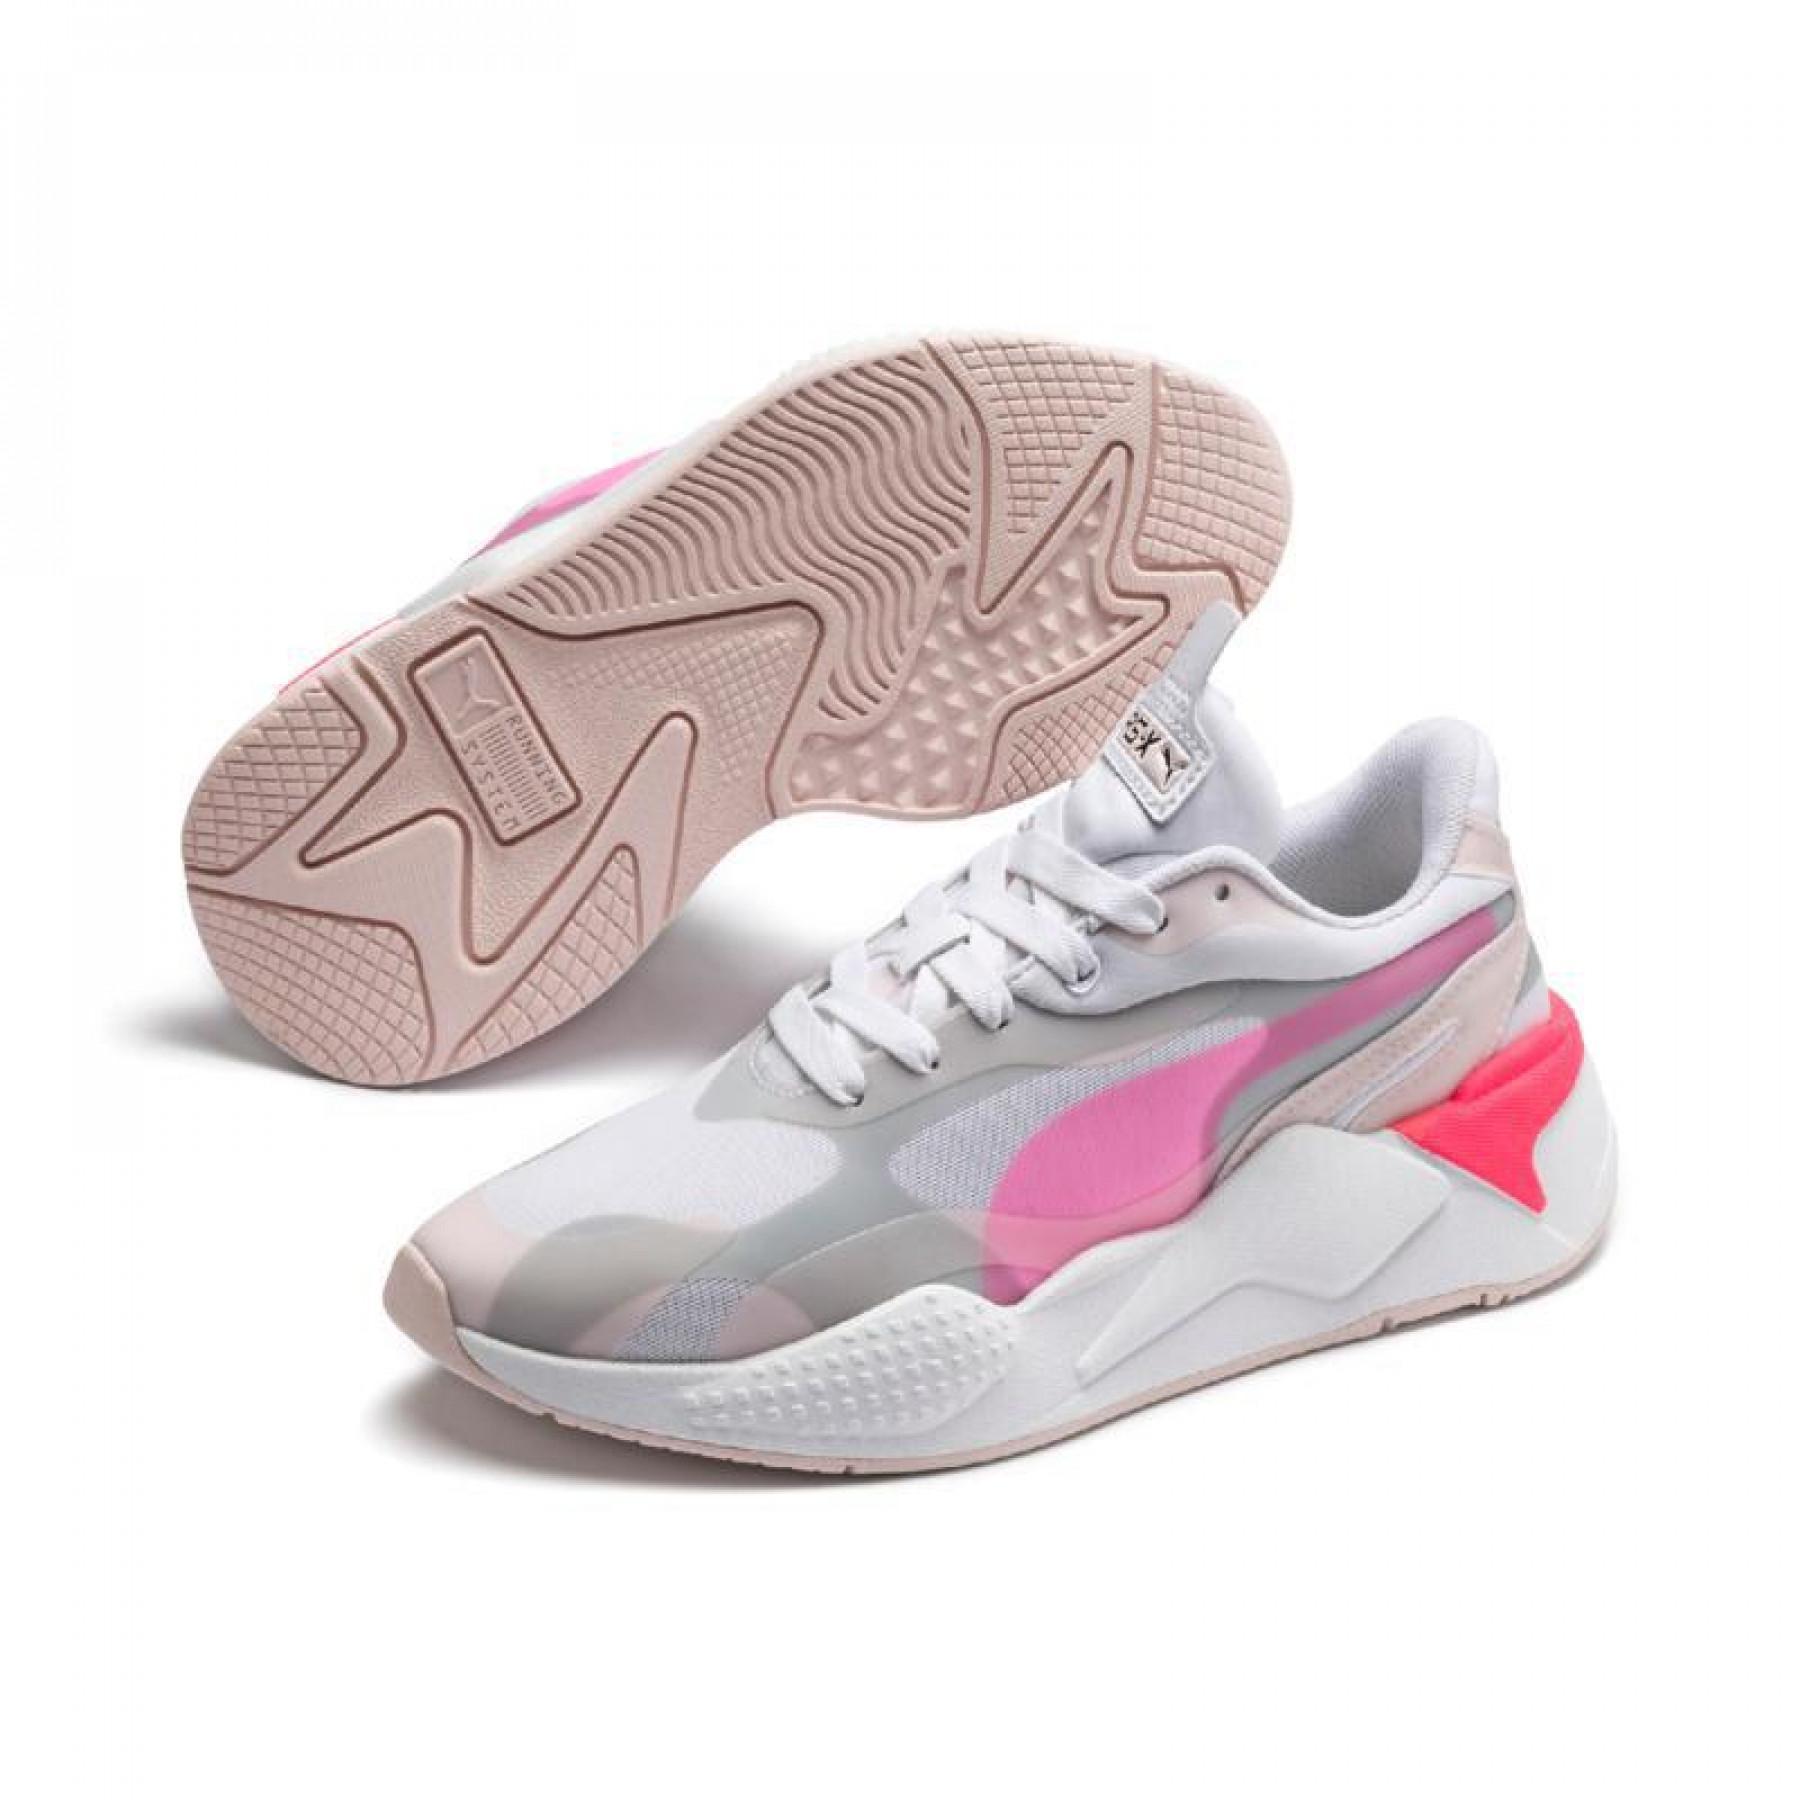 Women's sneakers Puma Rs-X³ tech